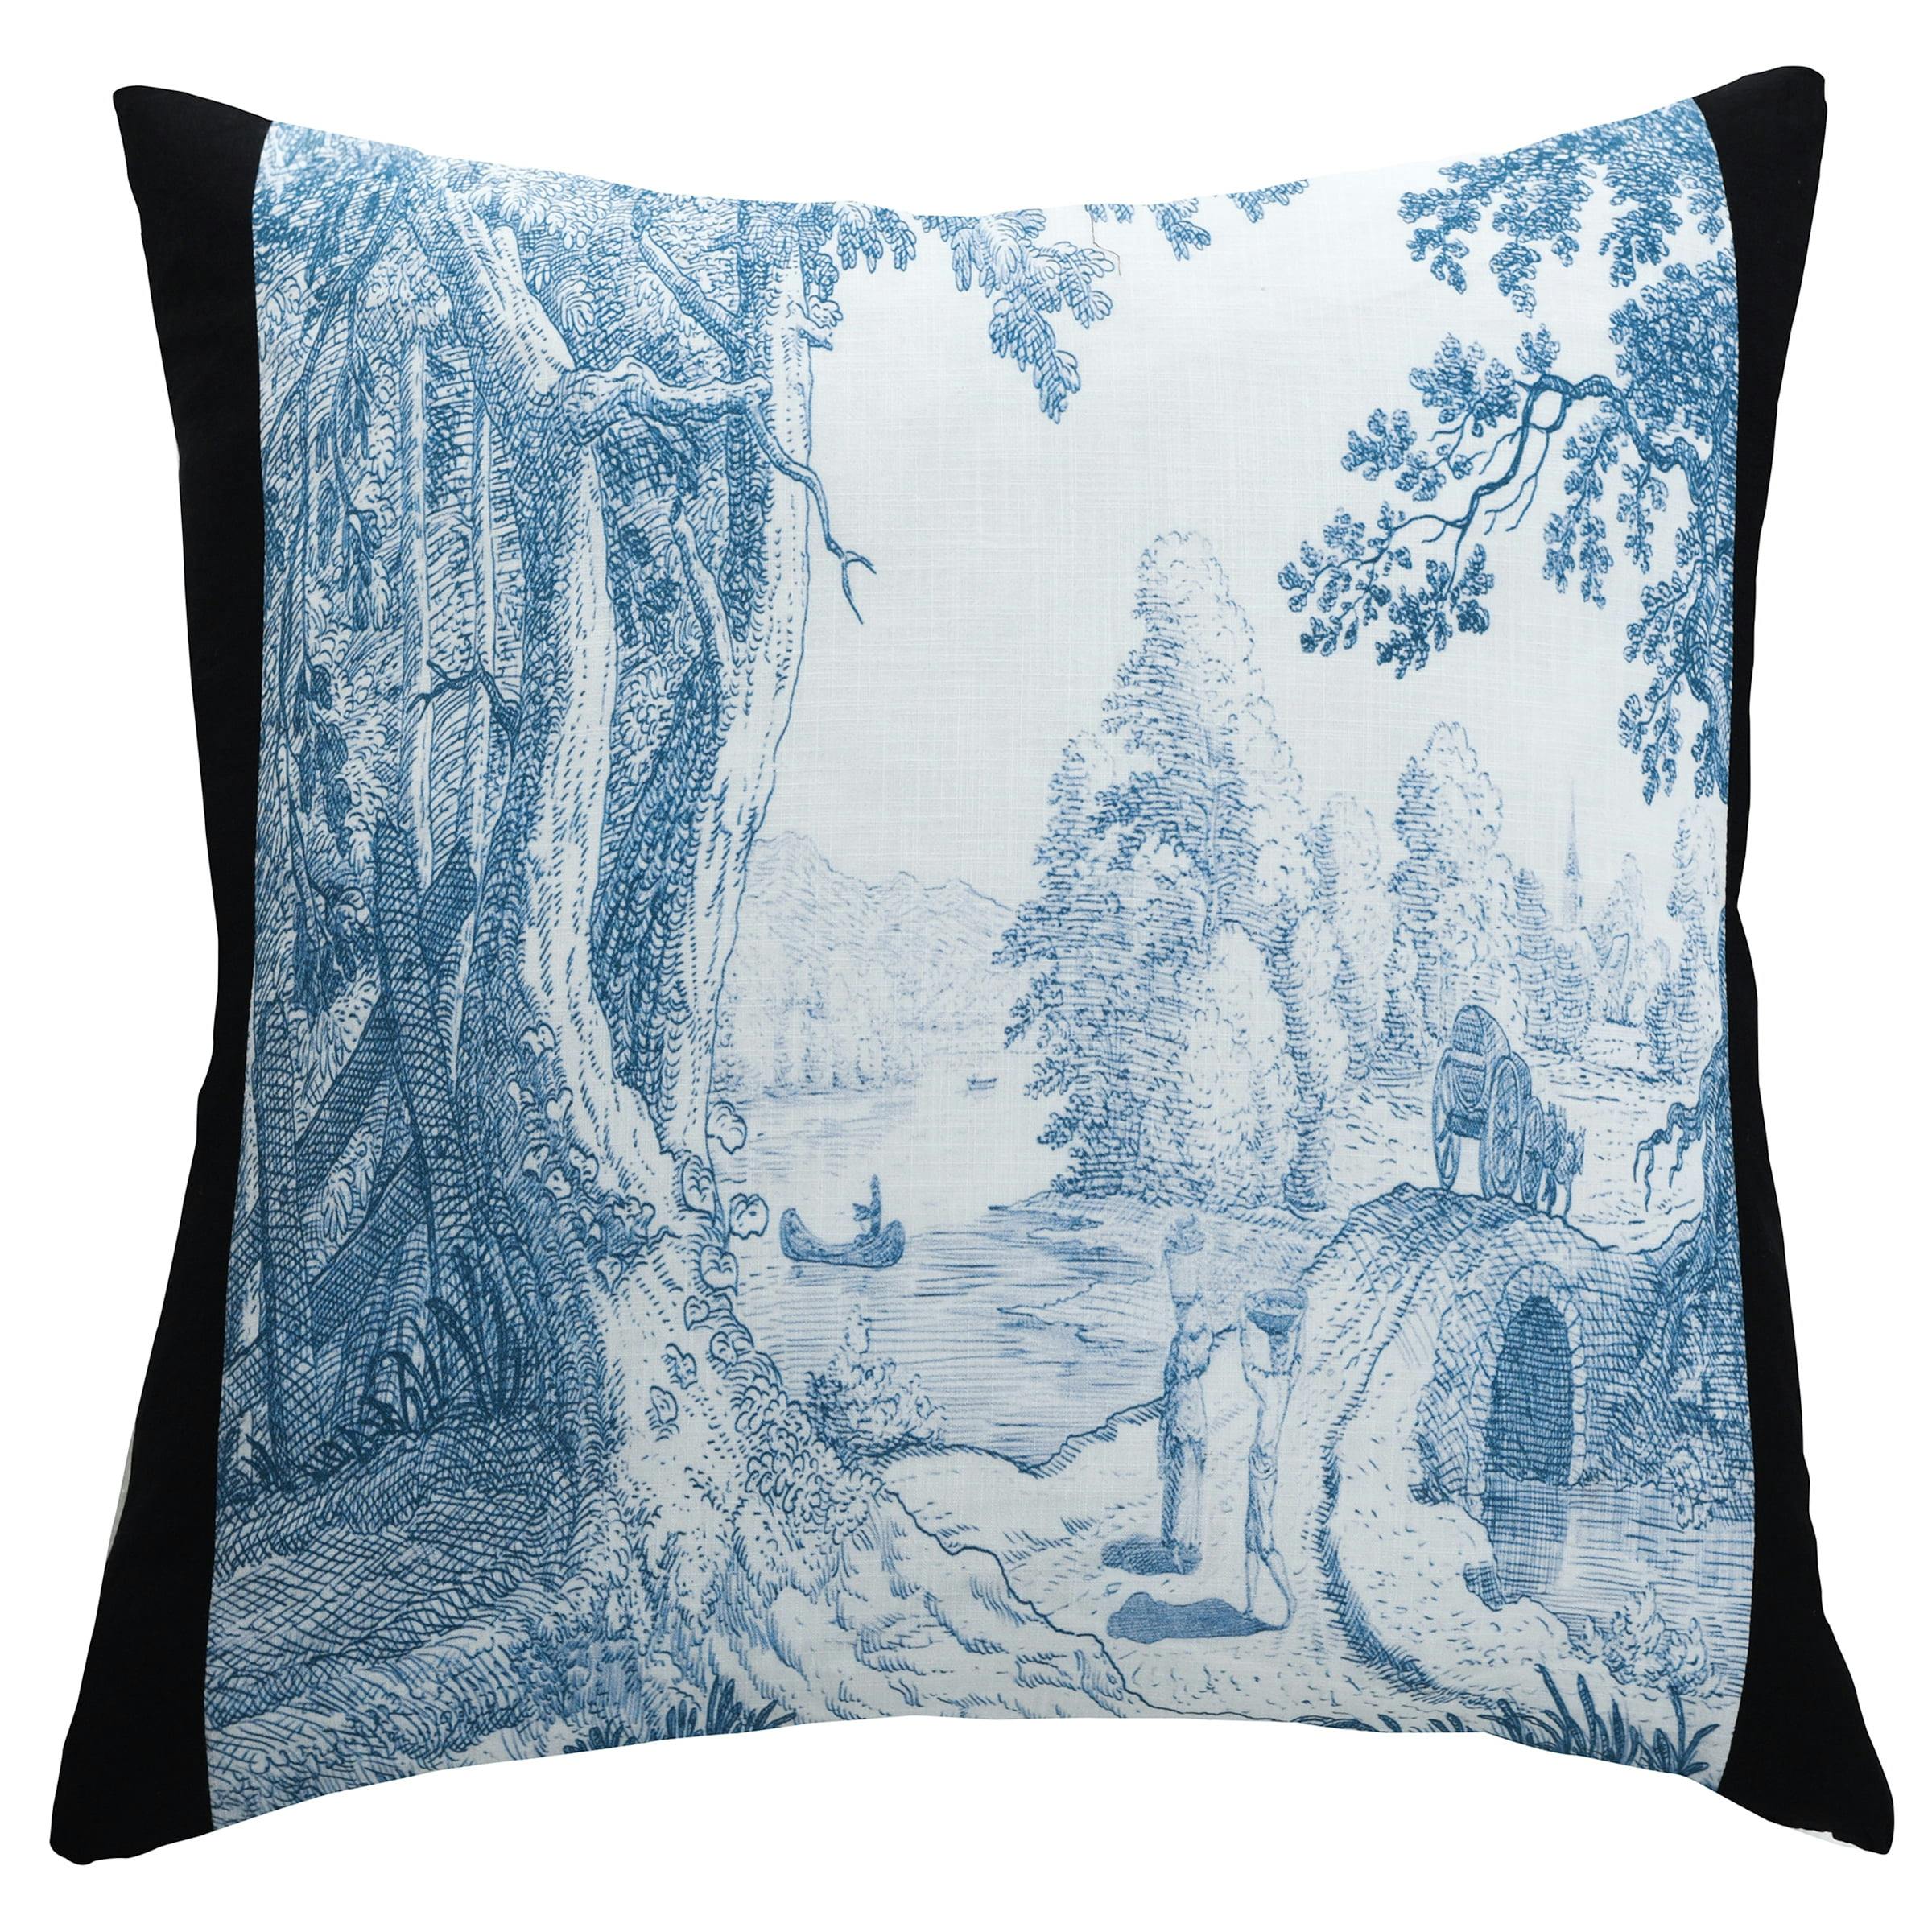 Dann Foley 24" Square Linen Decorative Pillow - Toile de Jouy Pattern